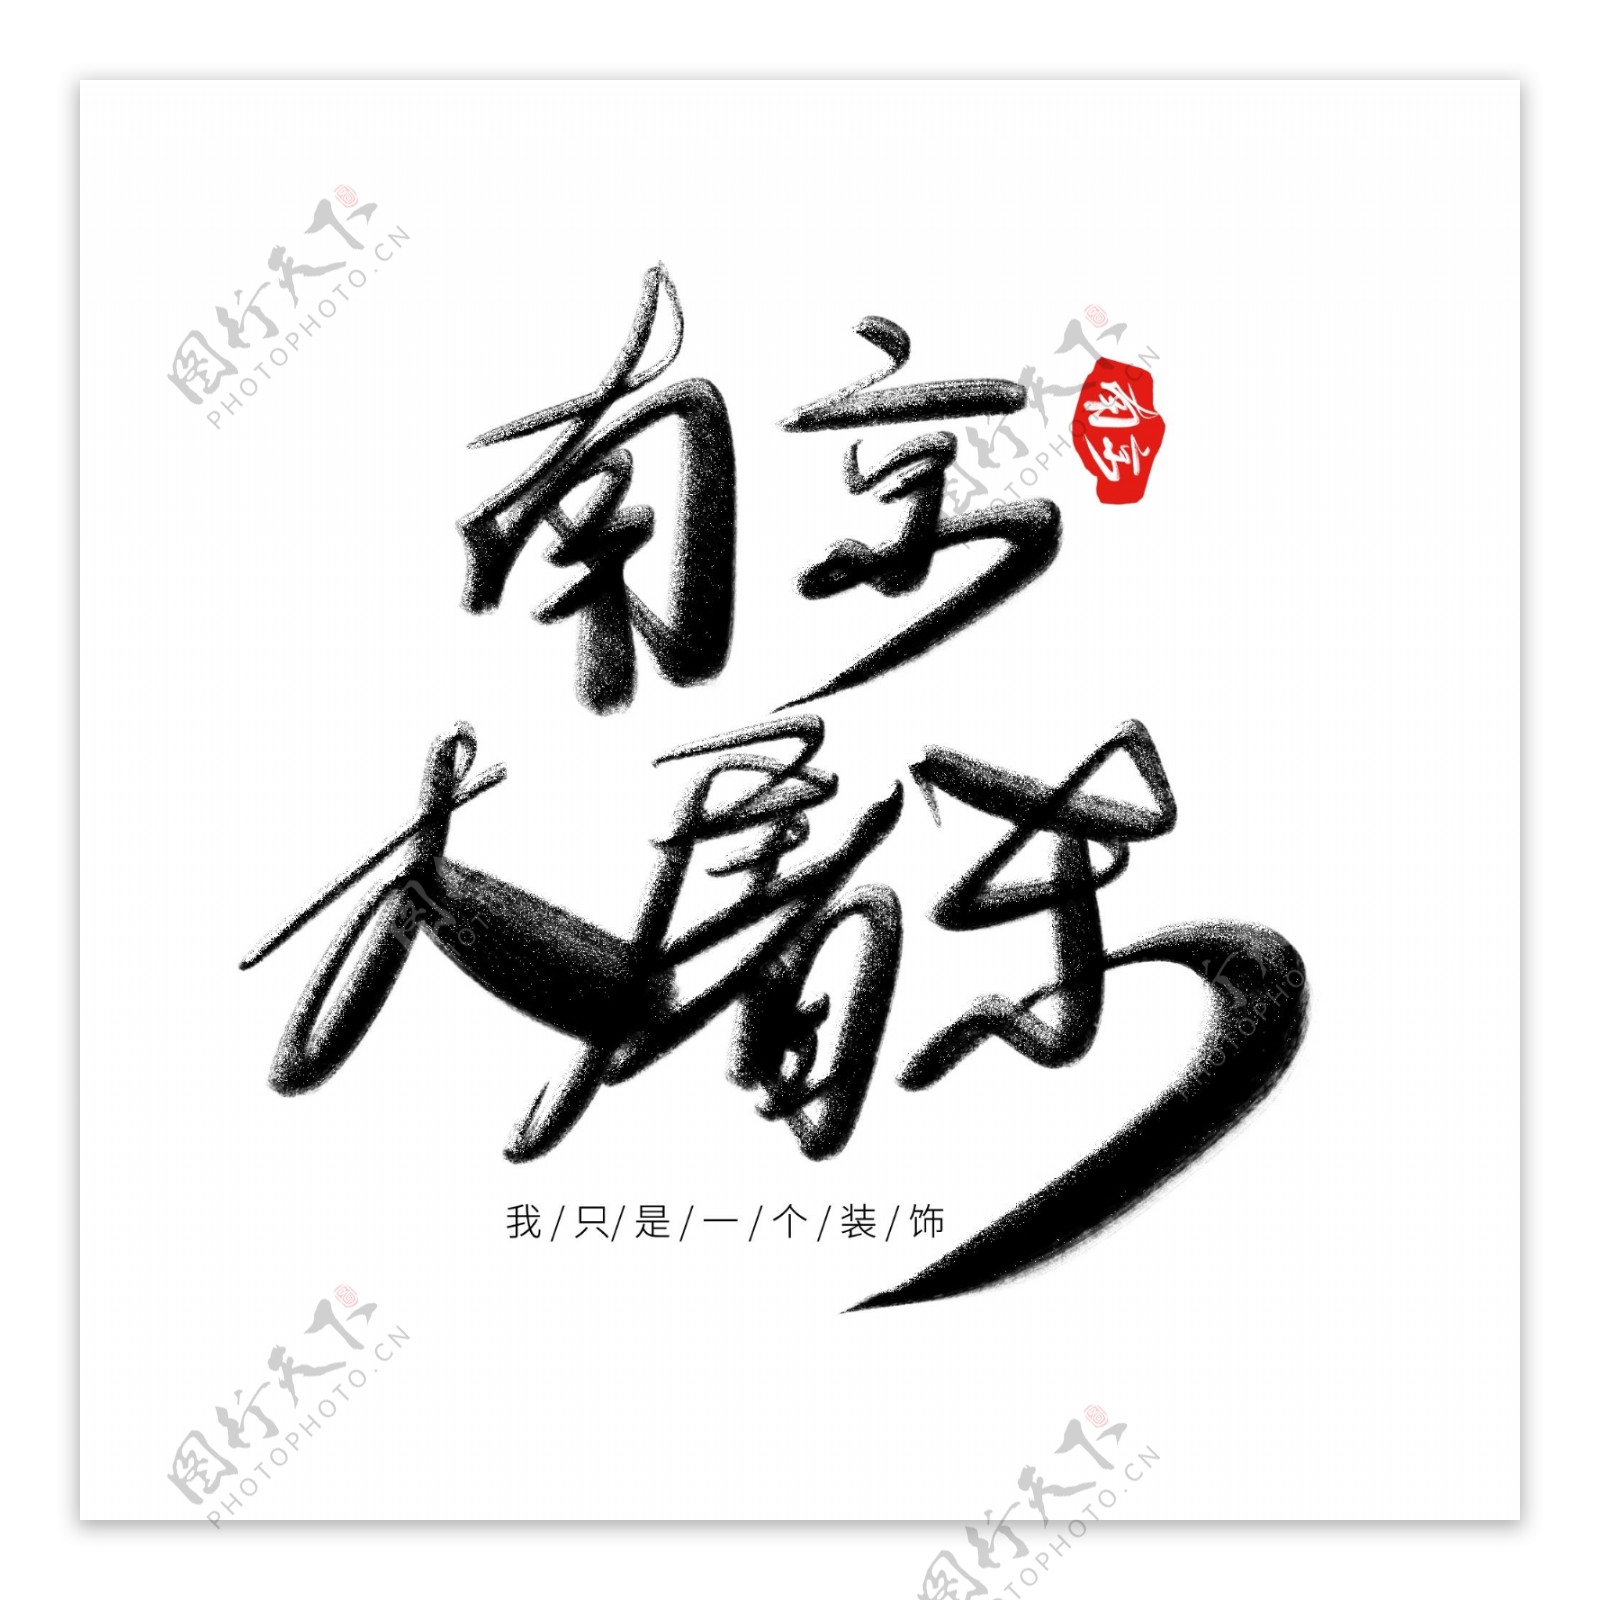 艺术字之中国风南京大屠杀银粉字体设计古风